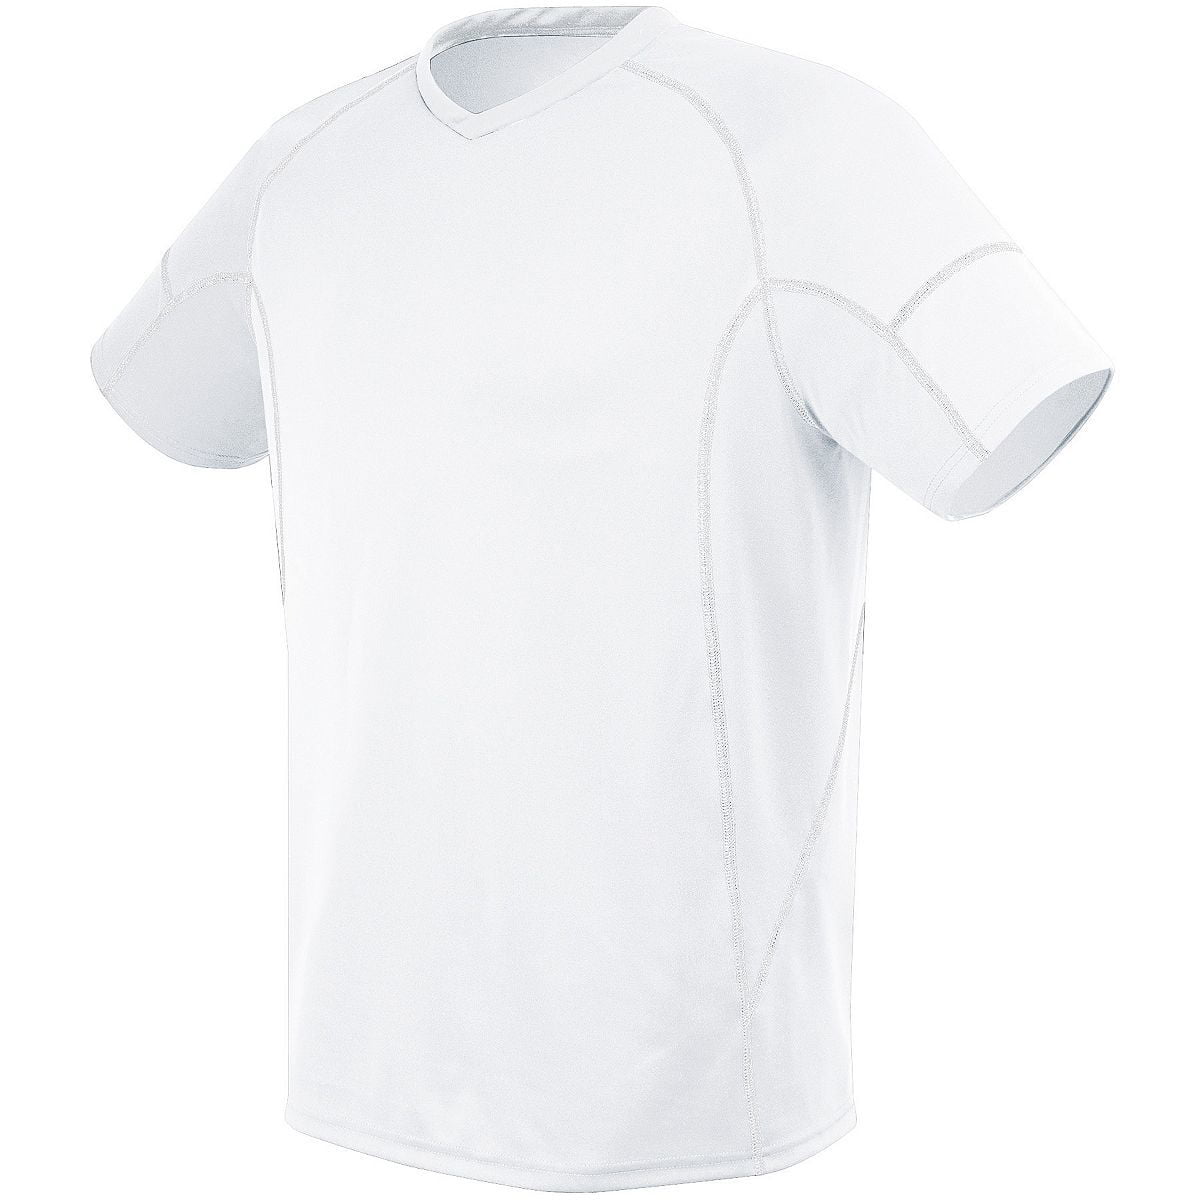 Umbro Long Sleeved Xtra Large Boys Girls Base Layer Sports Shirt New 